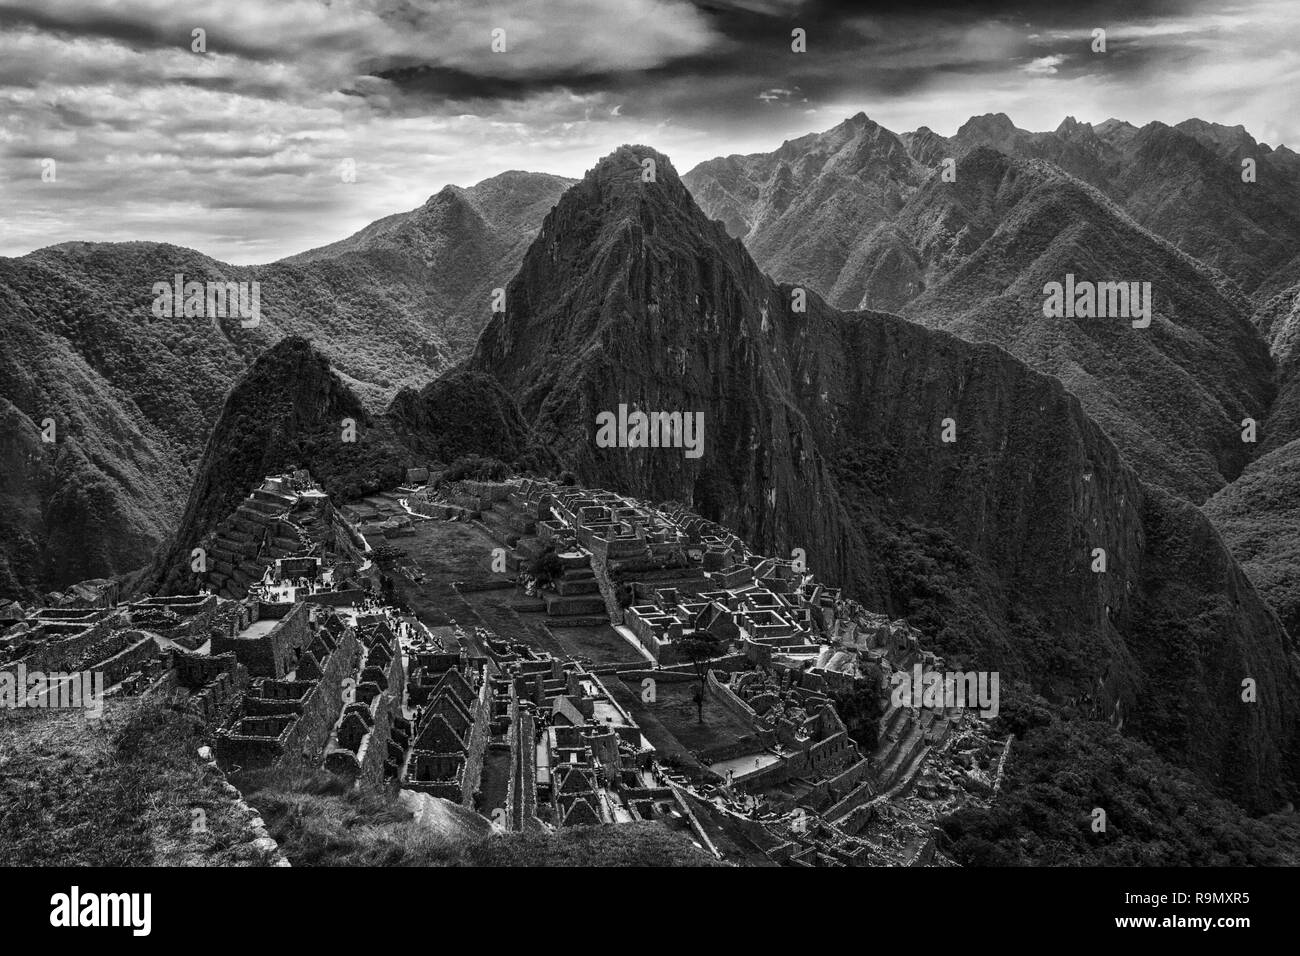 Sicht auf die verlorene Stadt der Inkas Machu Picchu in der Nähe von Cusco, Peru. Machu Picchu ist eine peruanische historische Heiligtum und ein UNESCO-Weltkulturerbe. Machu Stockfoto